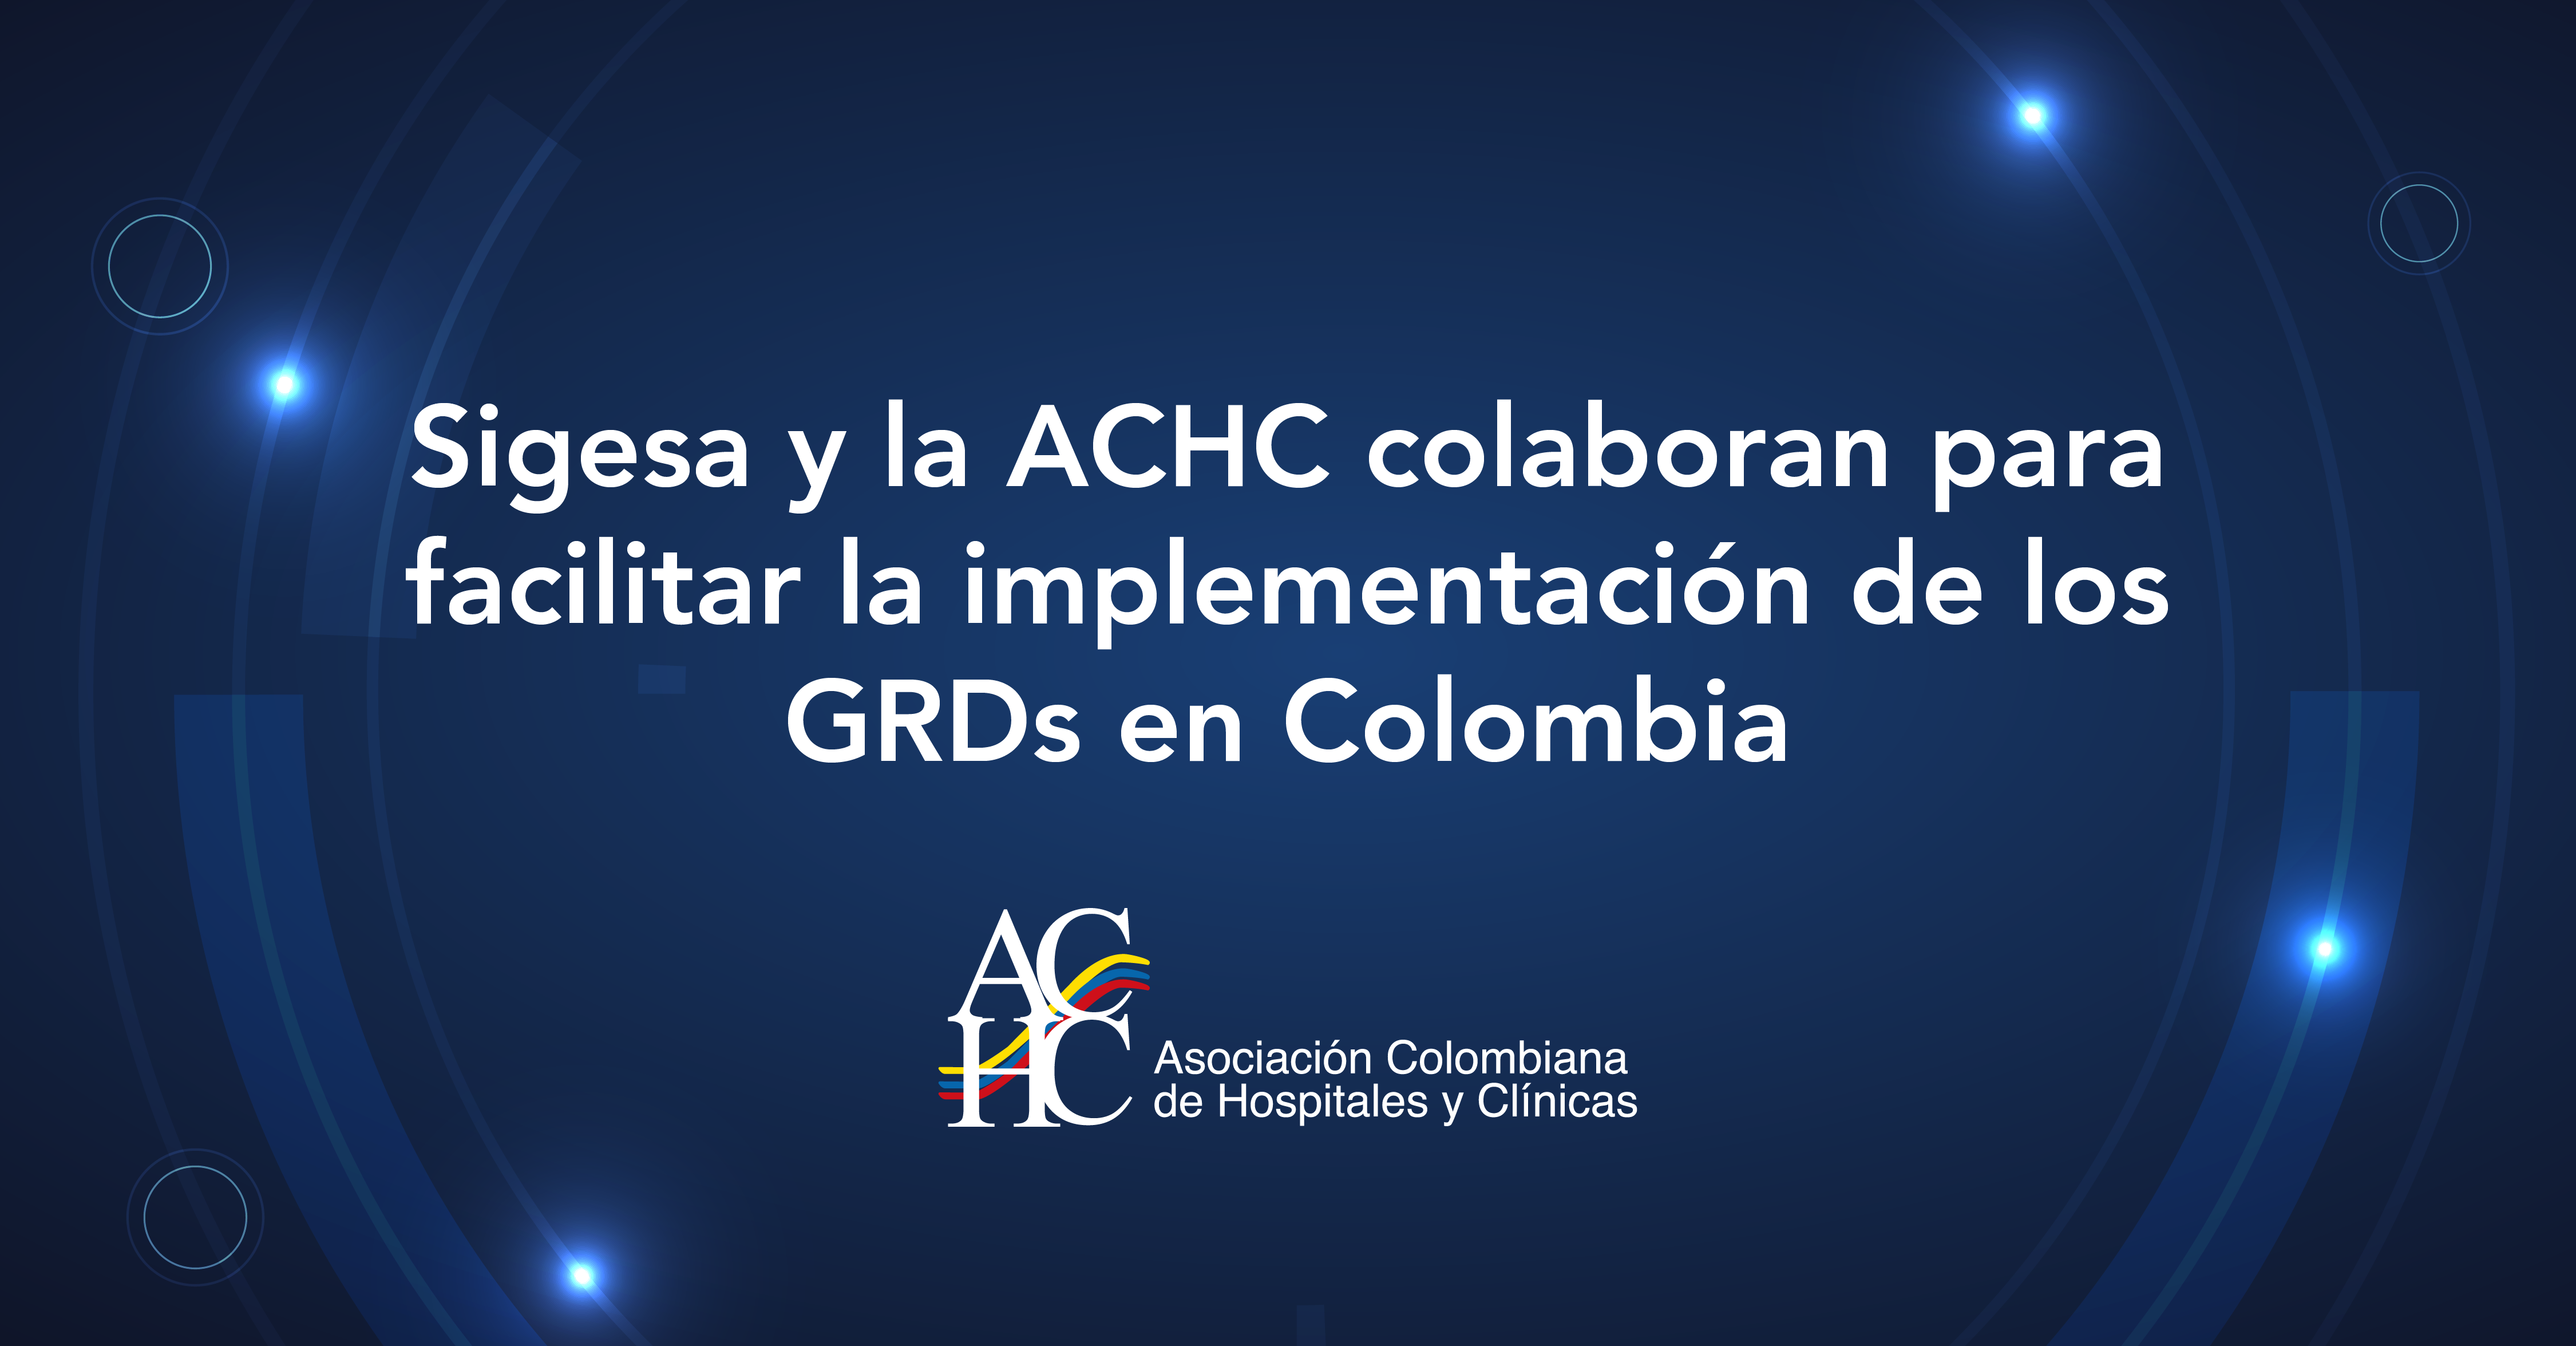 Sigesa y la ACHC colaboran para facilitar la implementación de los GRDs en Colombia